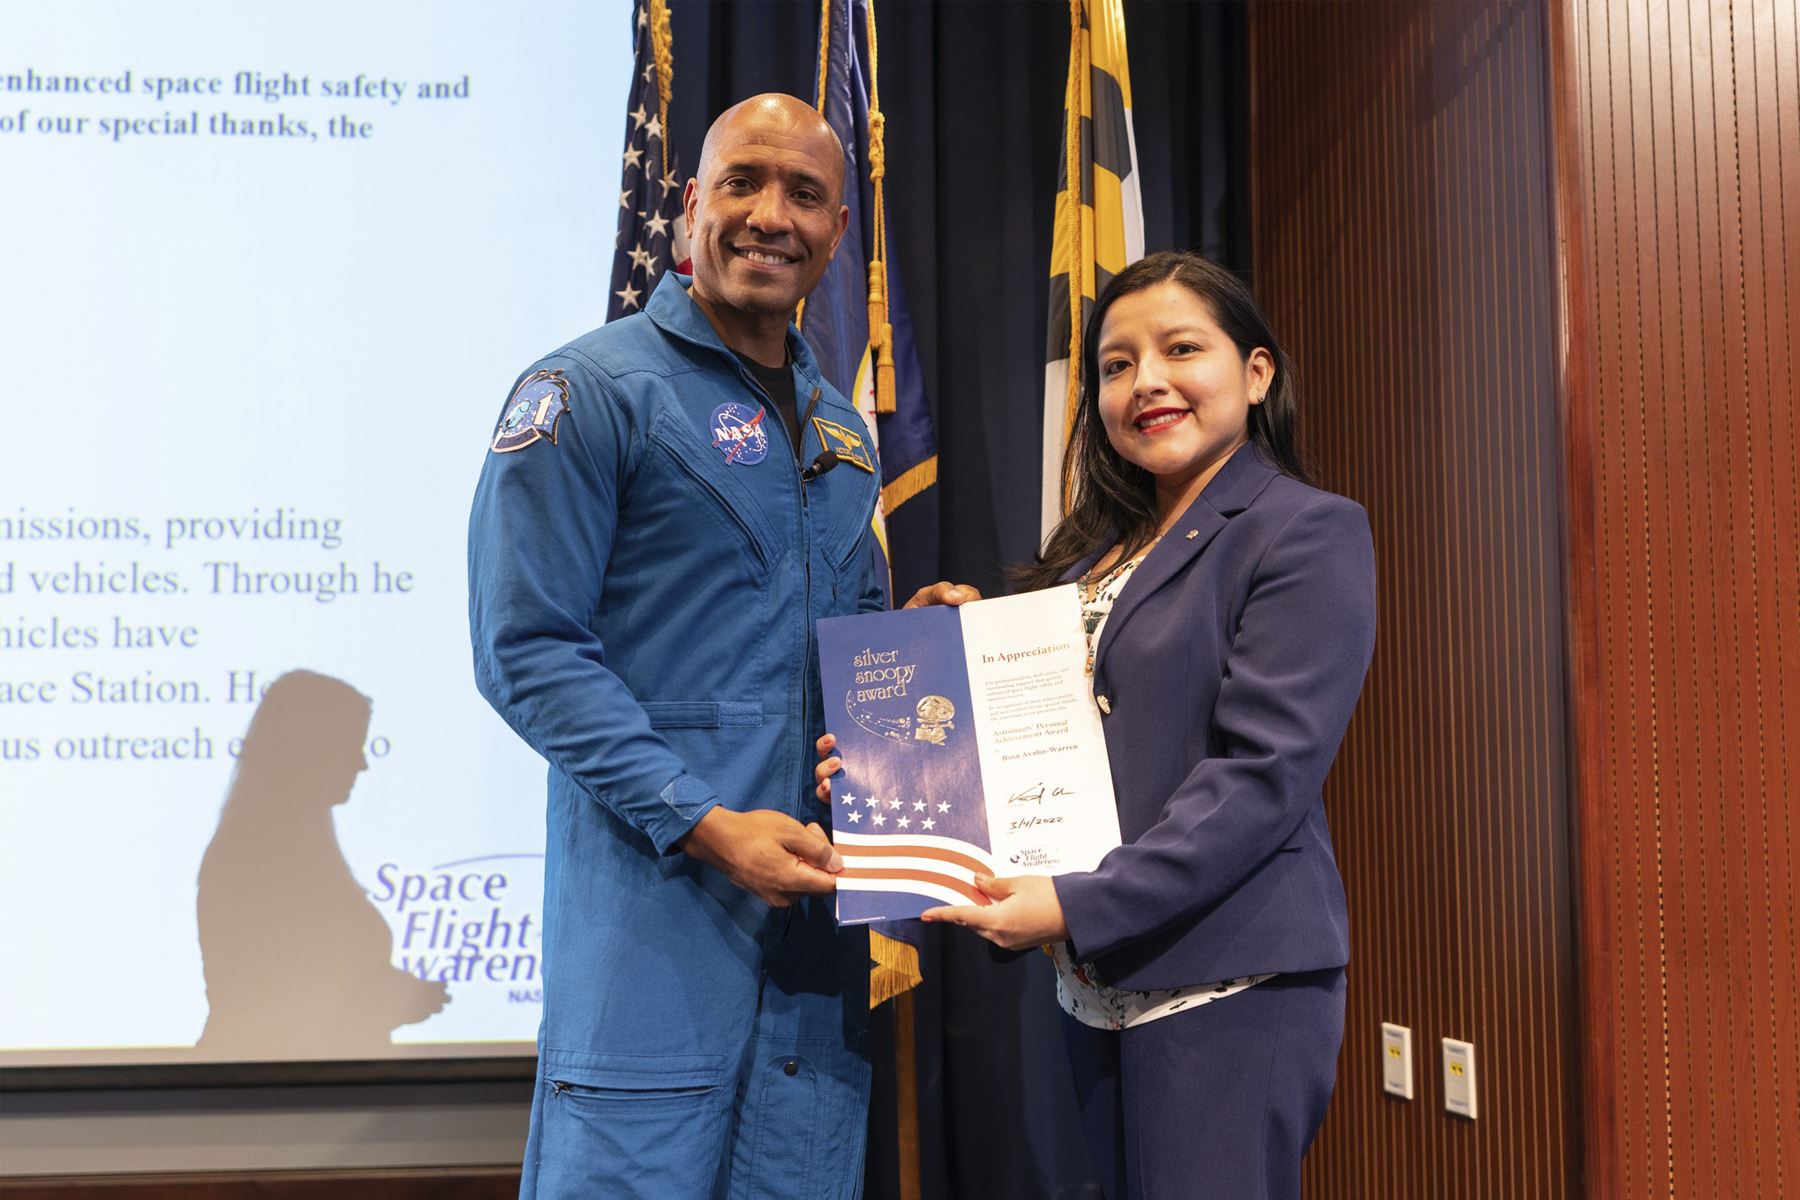 El Silver Snoopy Award reconoce el profesionalismo, dedicación y destacado apoyo brindado para mejorar la seguridad de los vuelos espaciales y éxito de las misiones espaciales. Foto: NASA